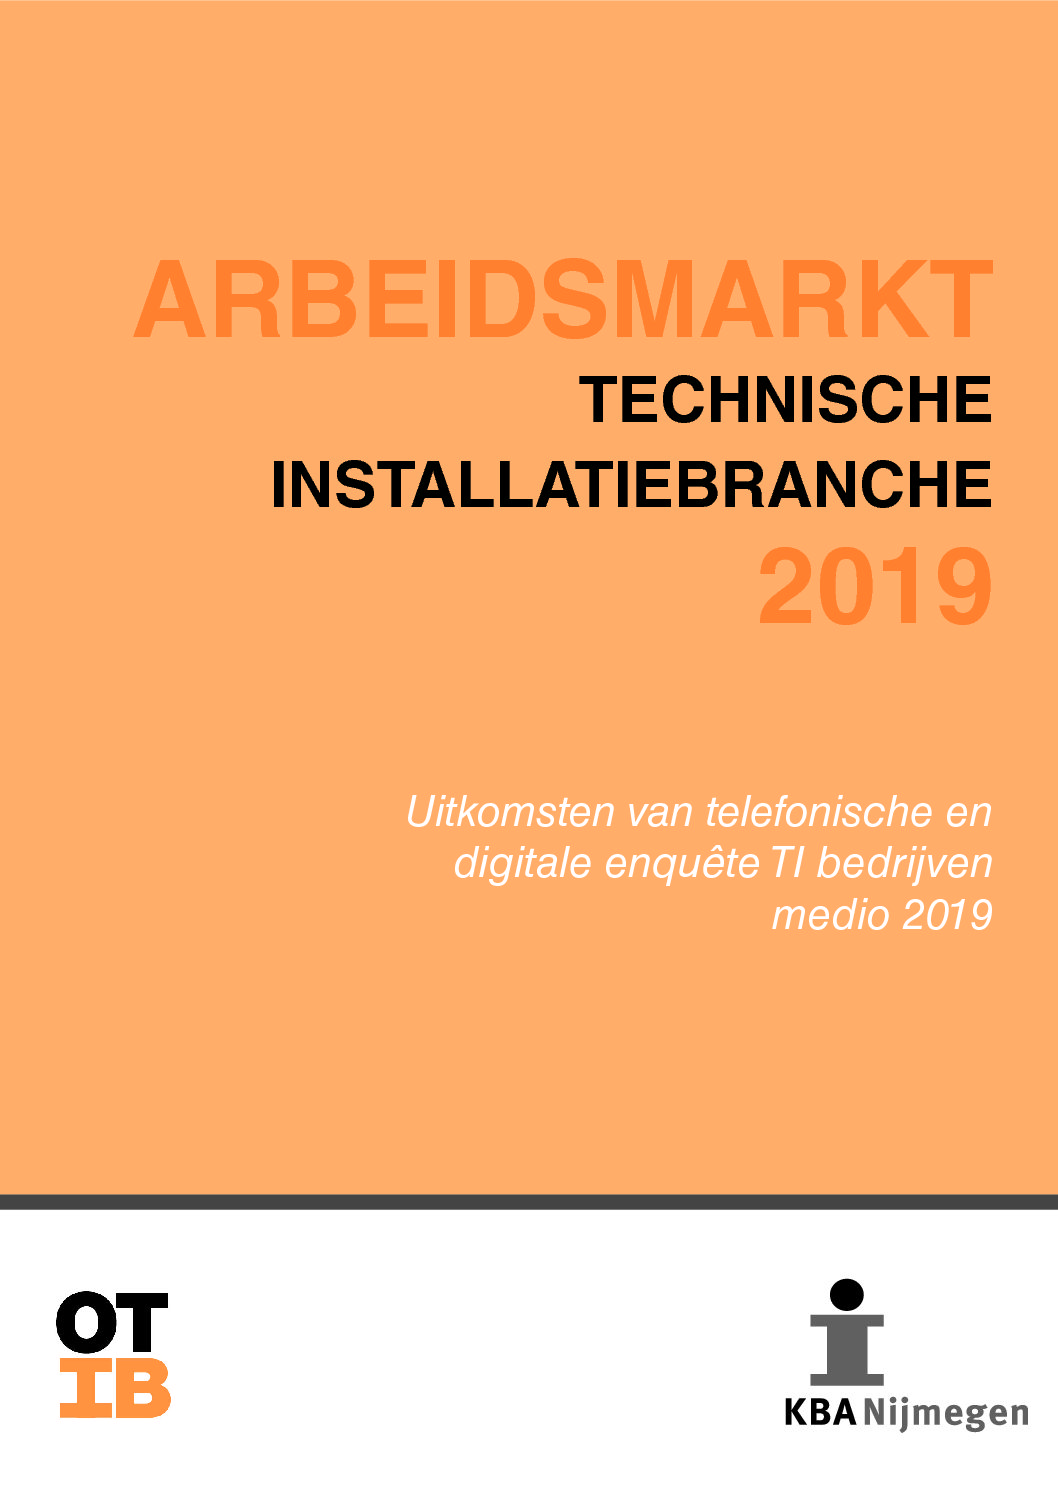 Arbeidsmarkt technische installatiebranche 2019